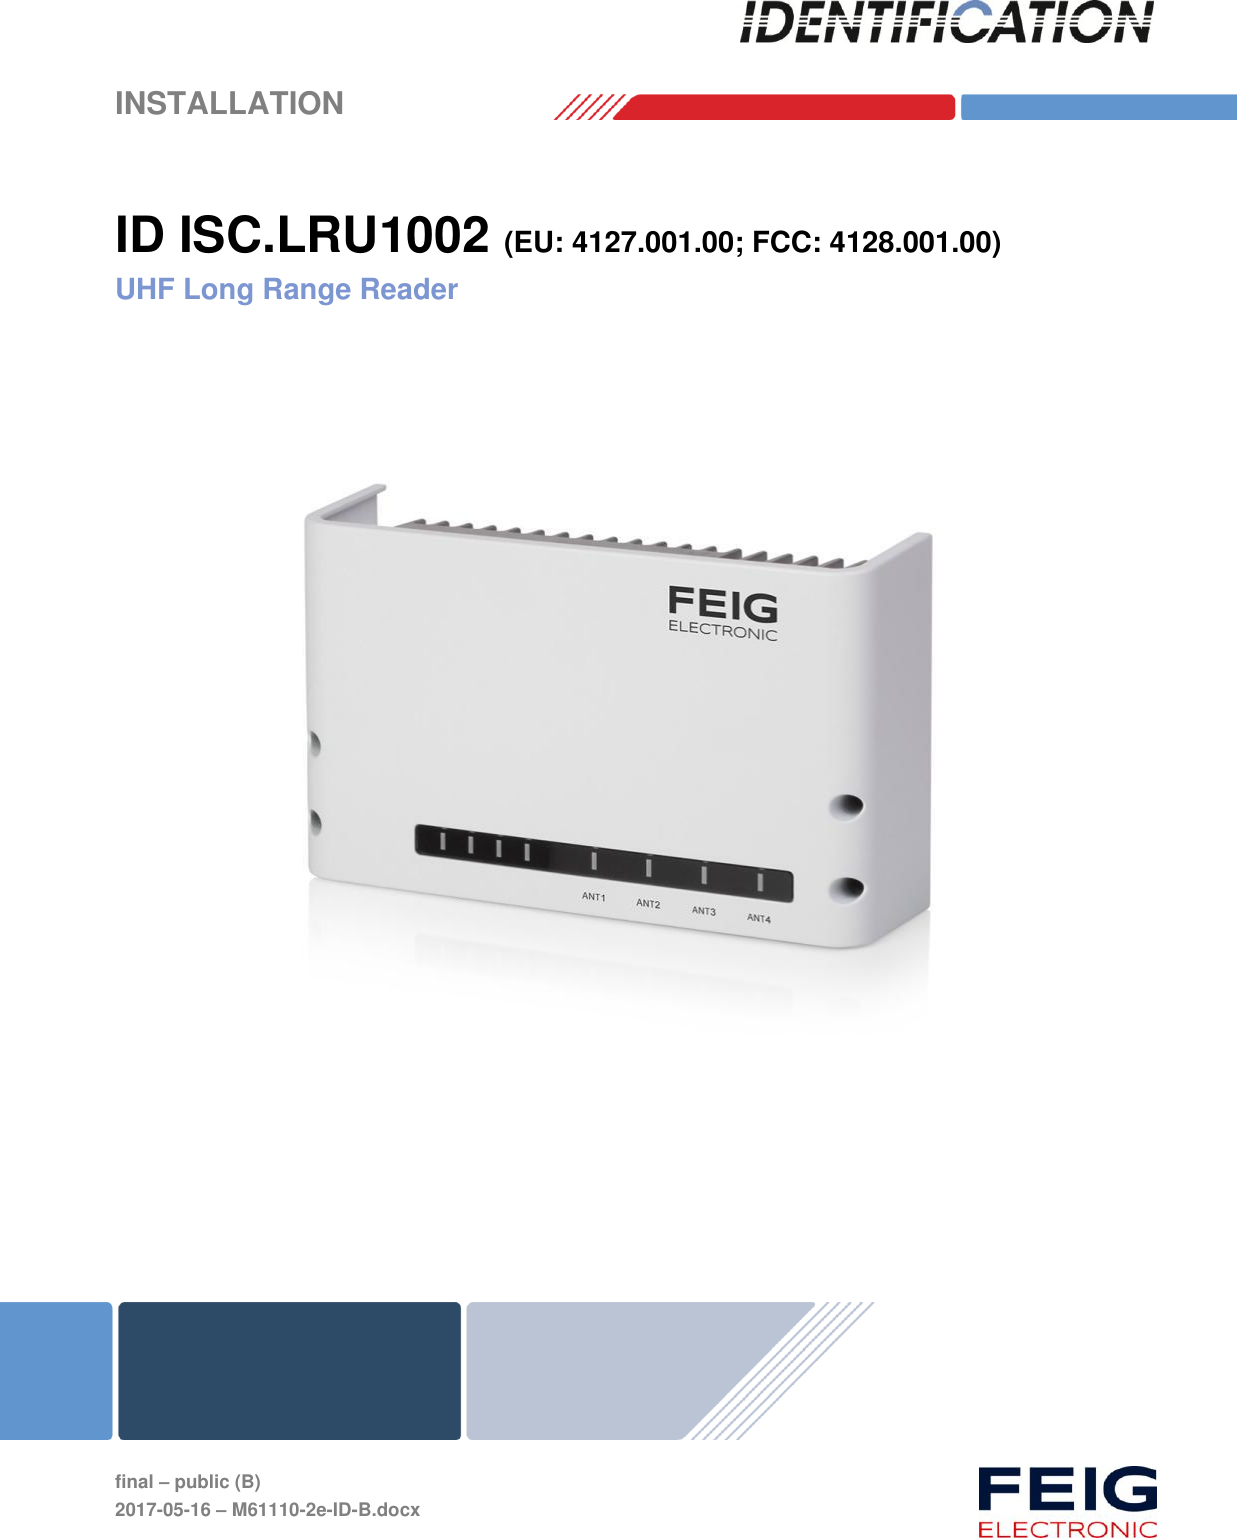    INSTALLATION     final – public (B) 2017-05-16 – M61110-2e-ID-B.docx  ID ISC.LRU1002 (EU: 4127.001.00; FCC: 4128.001.00) UHF Long Range Reader     